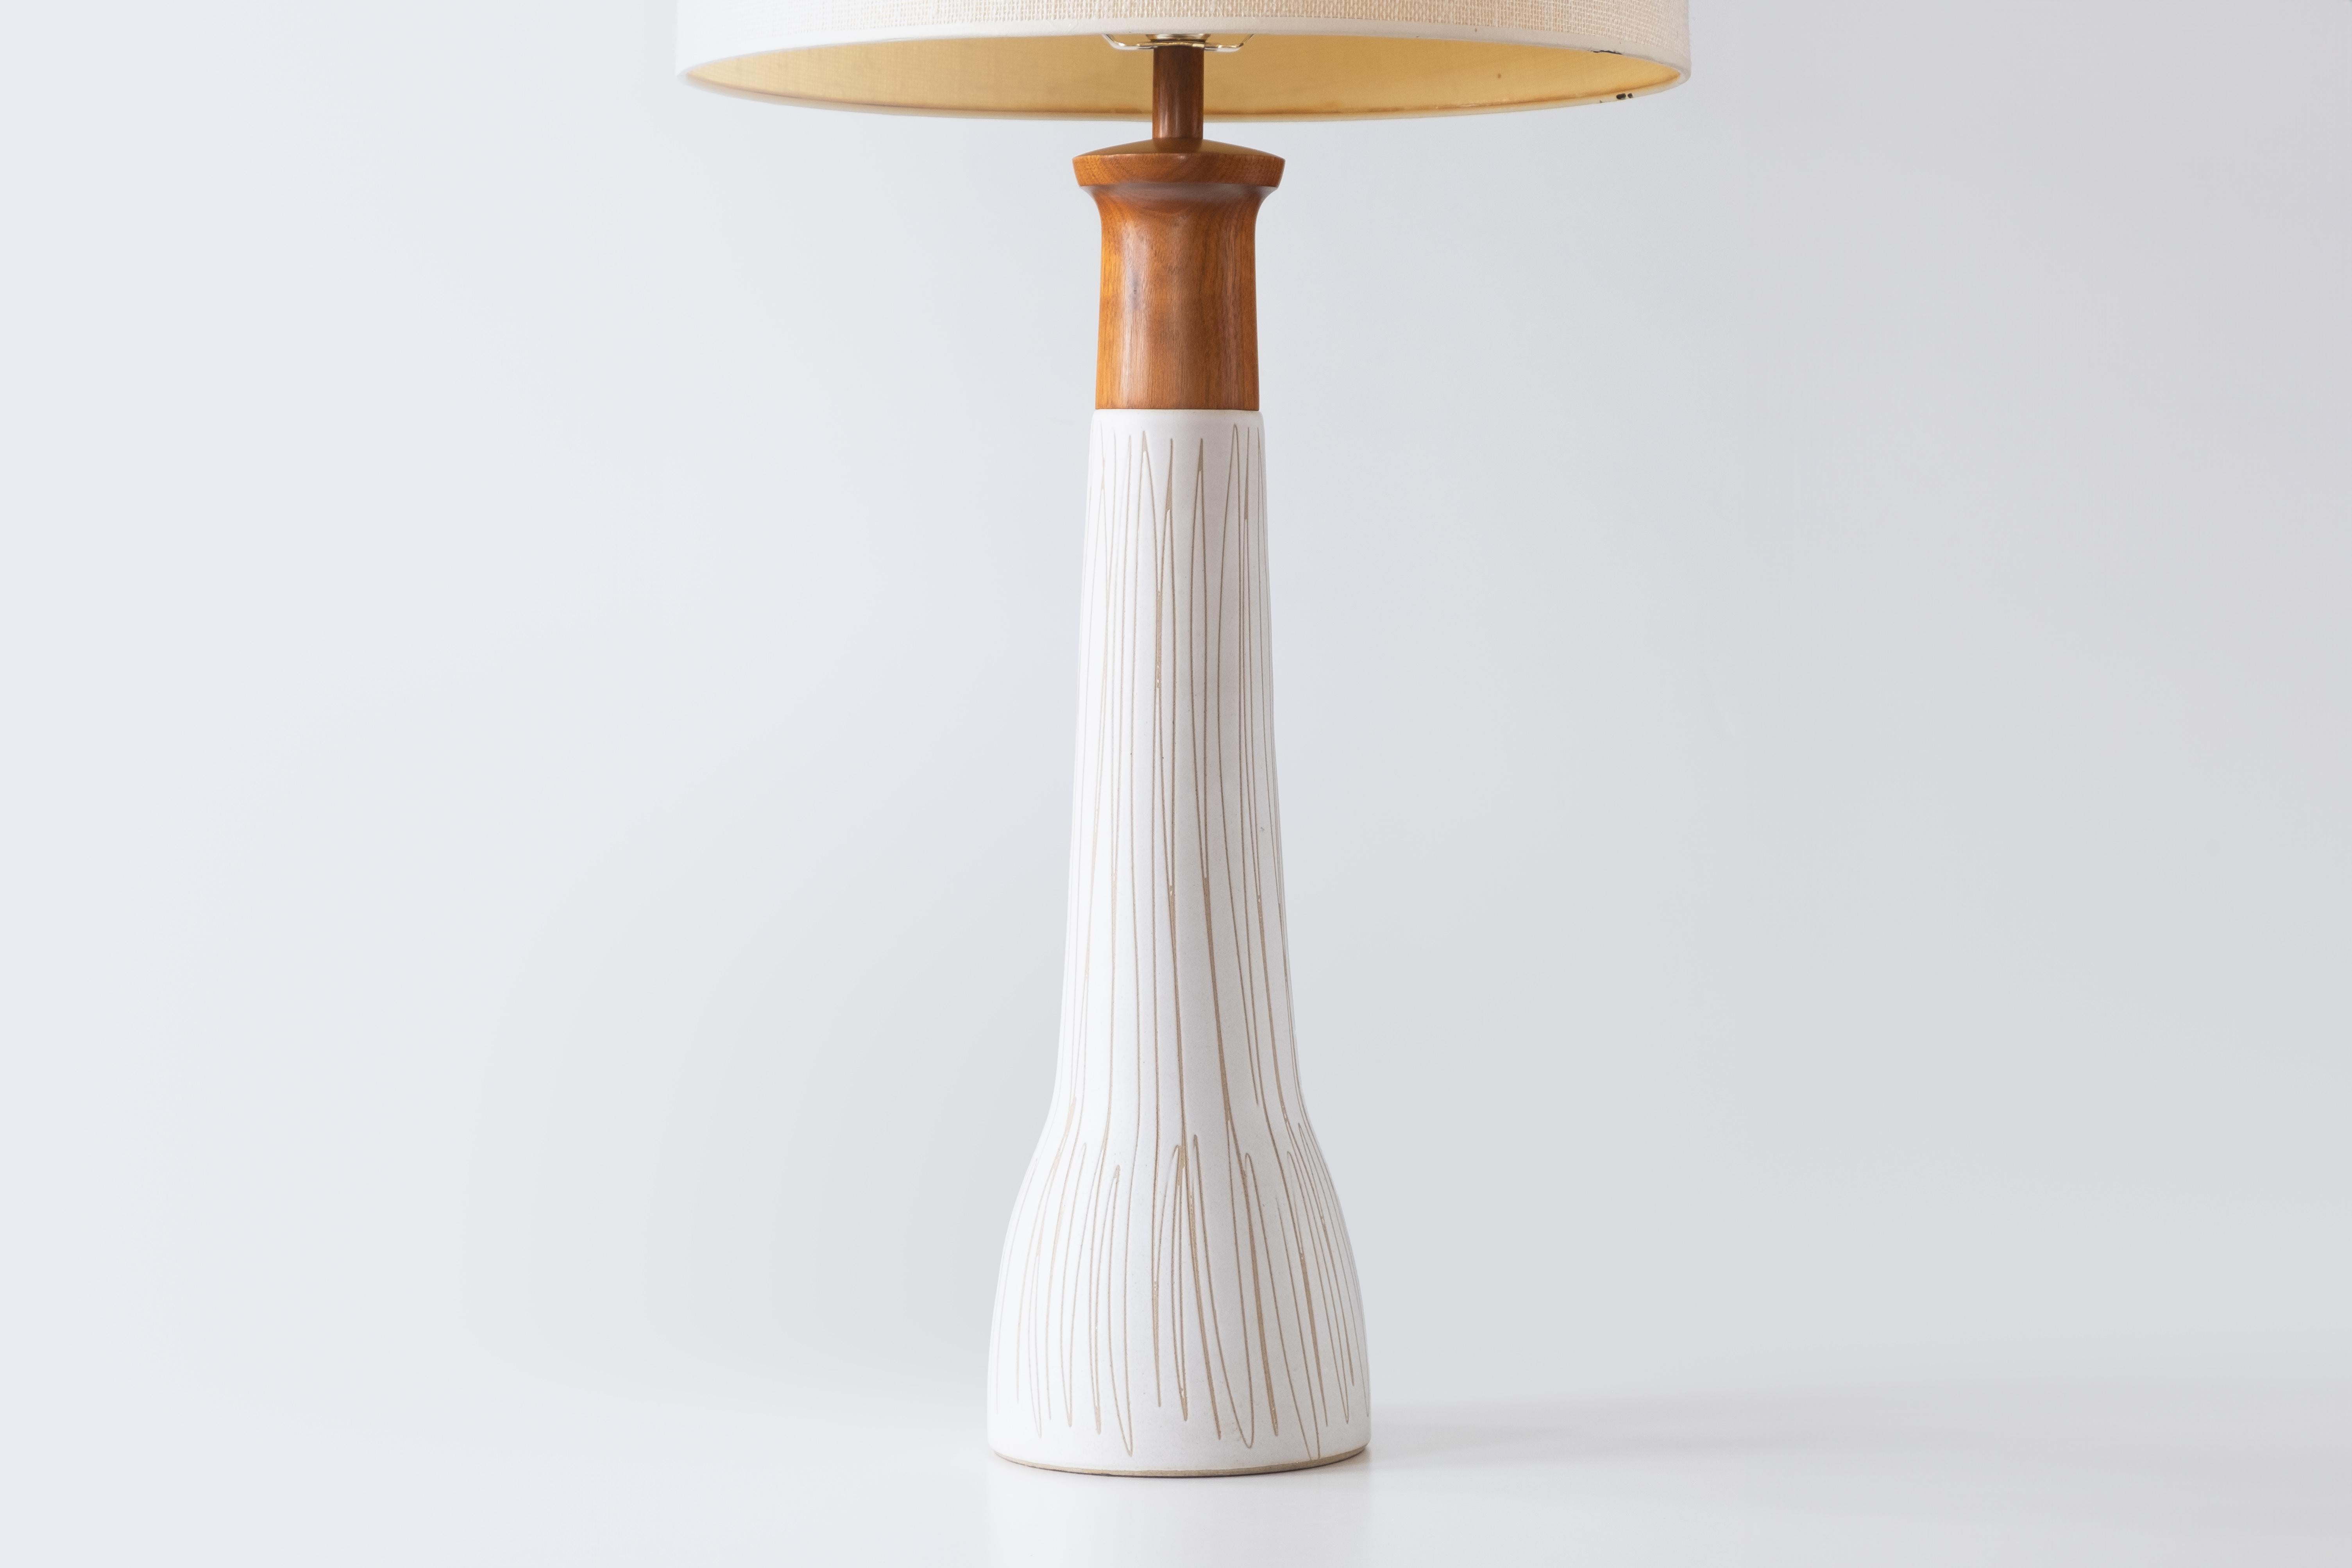 Linen Gordon & Jane Martz / Marshall Studios Ceramic Table Lamps, White Glaze For Sale